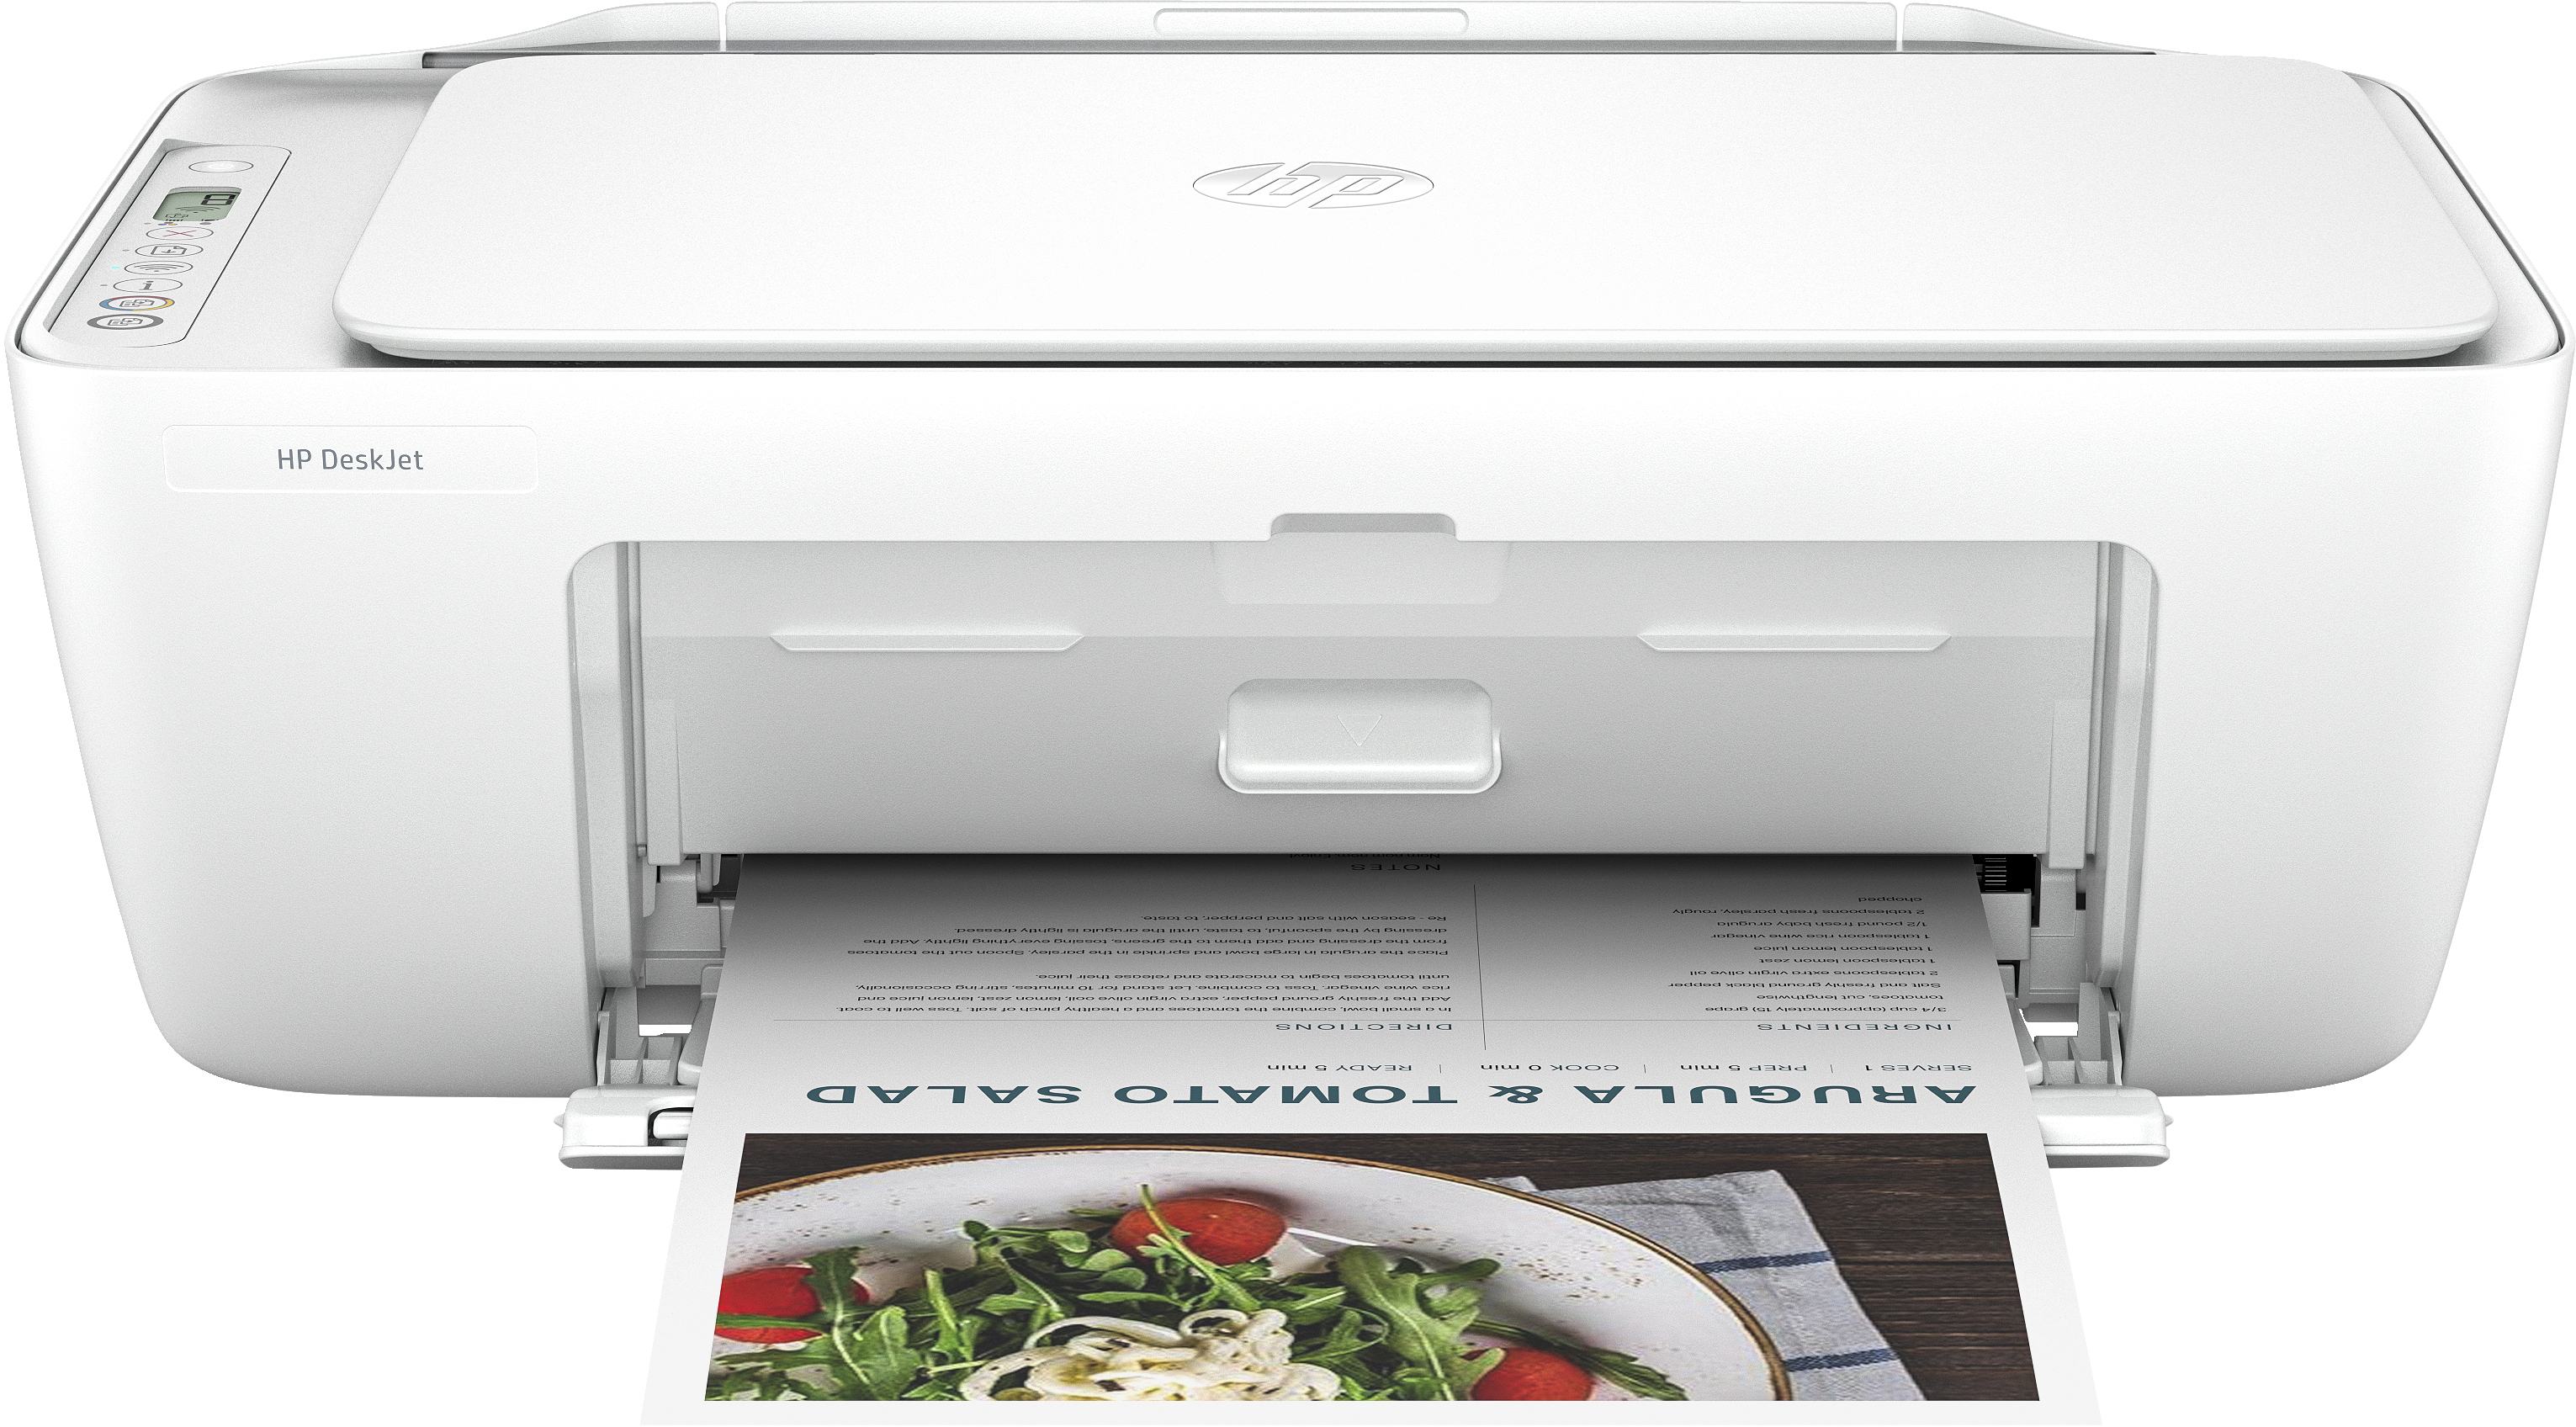 All-in-One WLAN Tintenstrahldrucker DeskJet Printer 2810e HP Multifunktionsdrucker